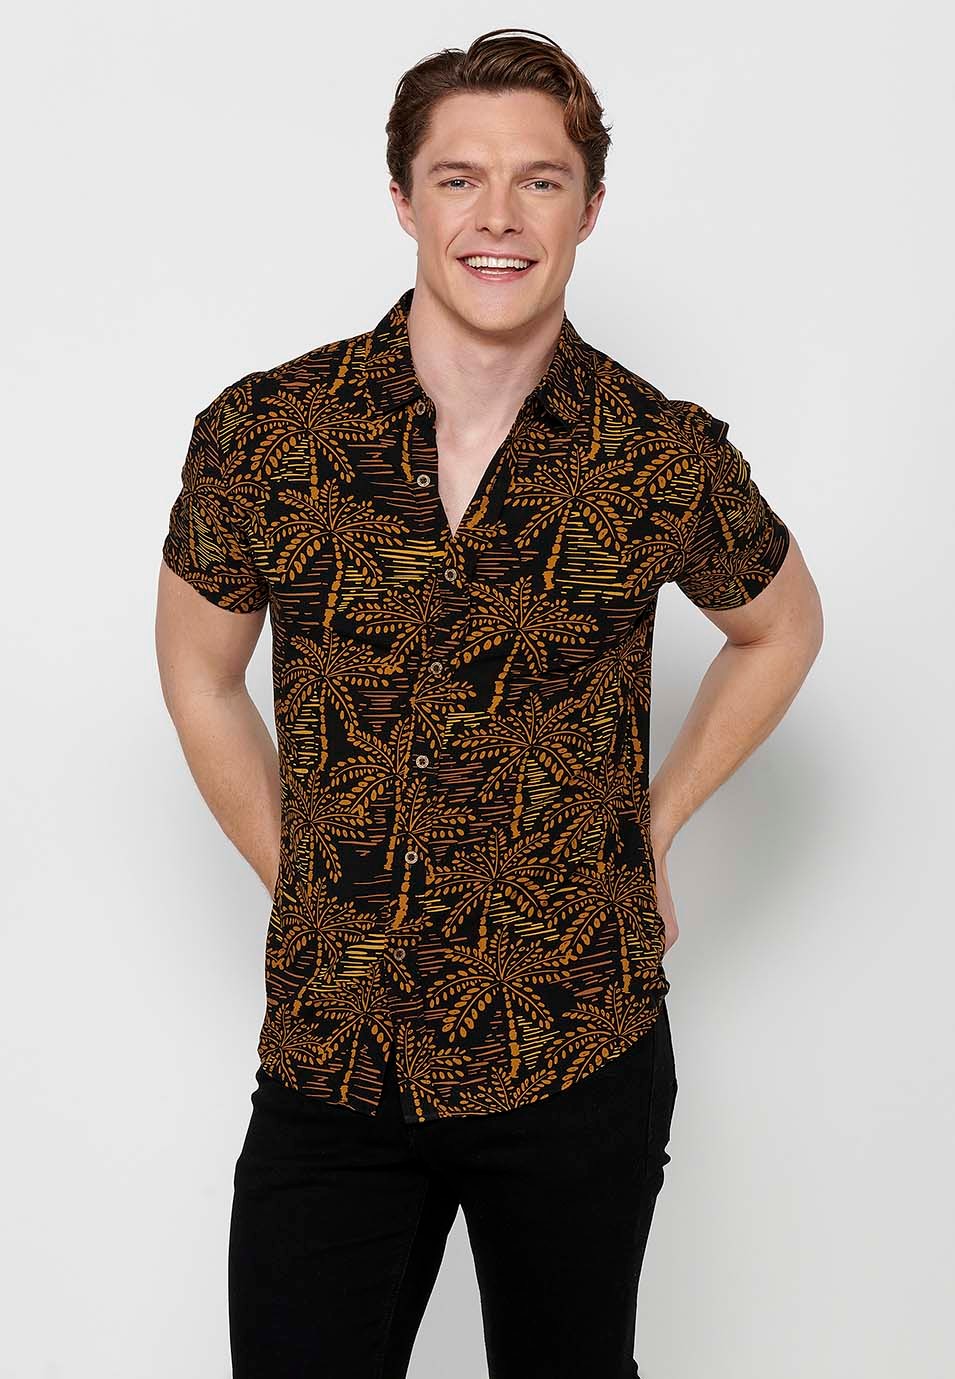 Camisa de manga corta con cuello camisero y estampado floral tropical, color tierra para hombres